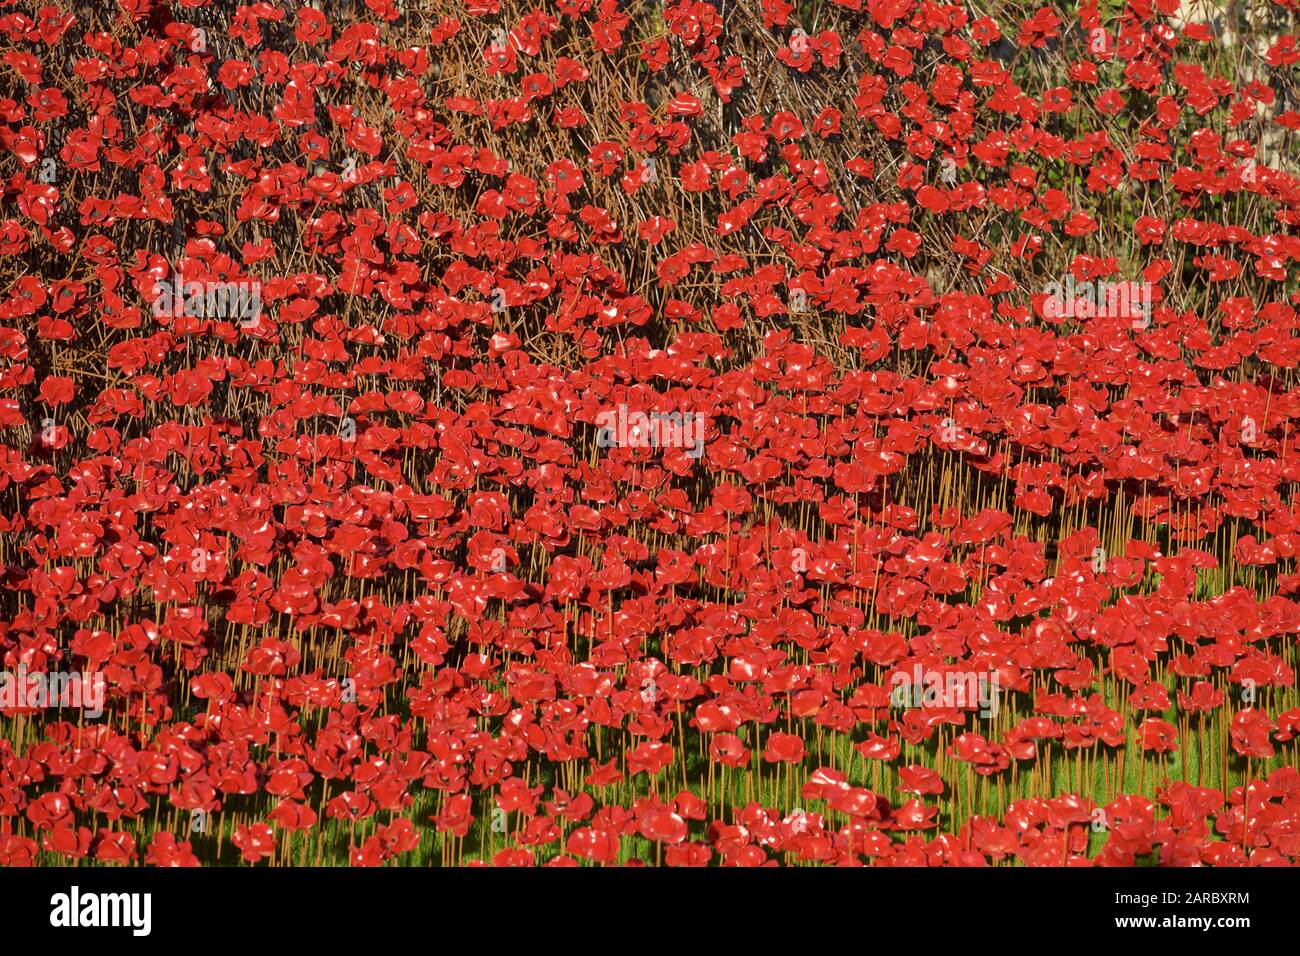 Mohnblumen aus Blut fegte Länder und Meere der Roten Installation am Tower von London Kennzeichnung 100 Jahre seit dem 1. Weltkrieg. Stockfoto